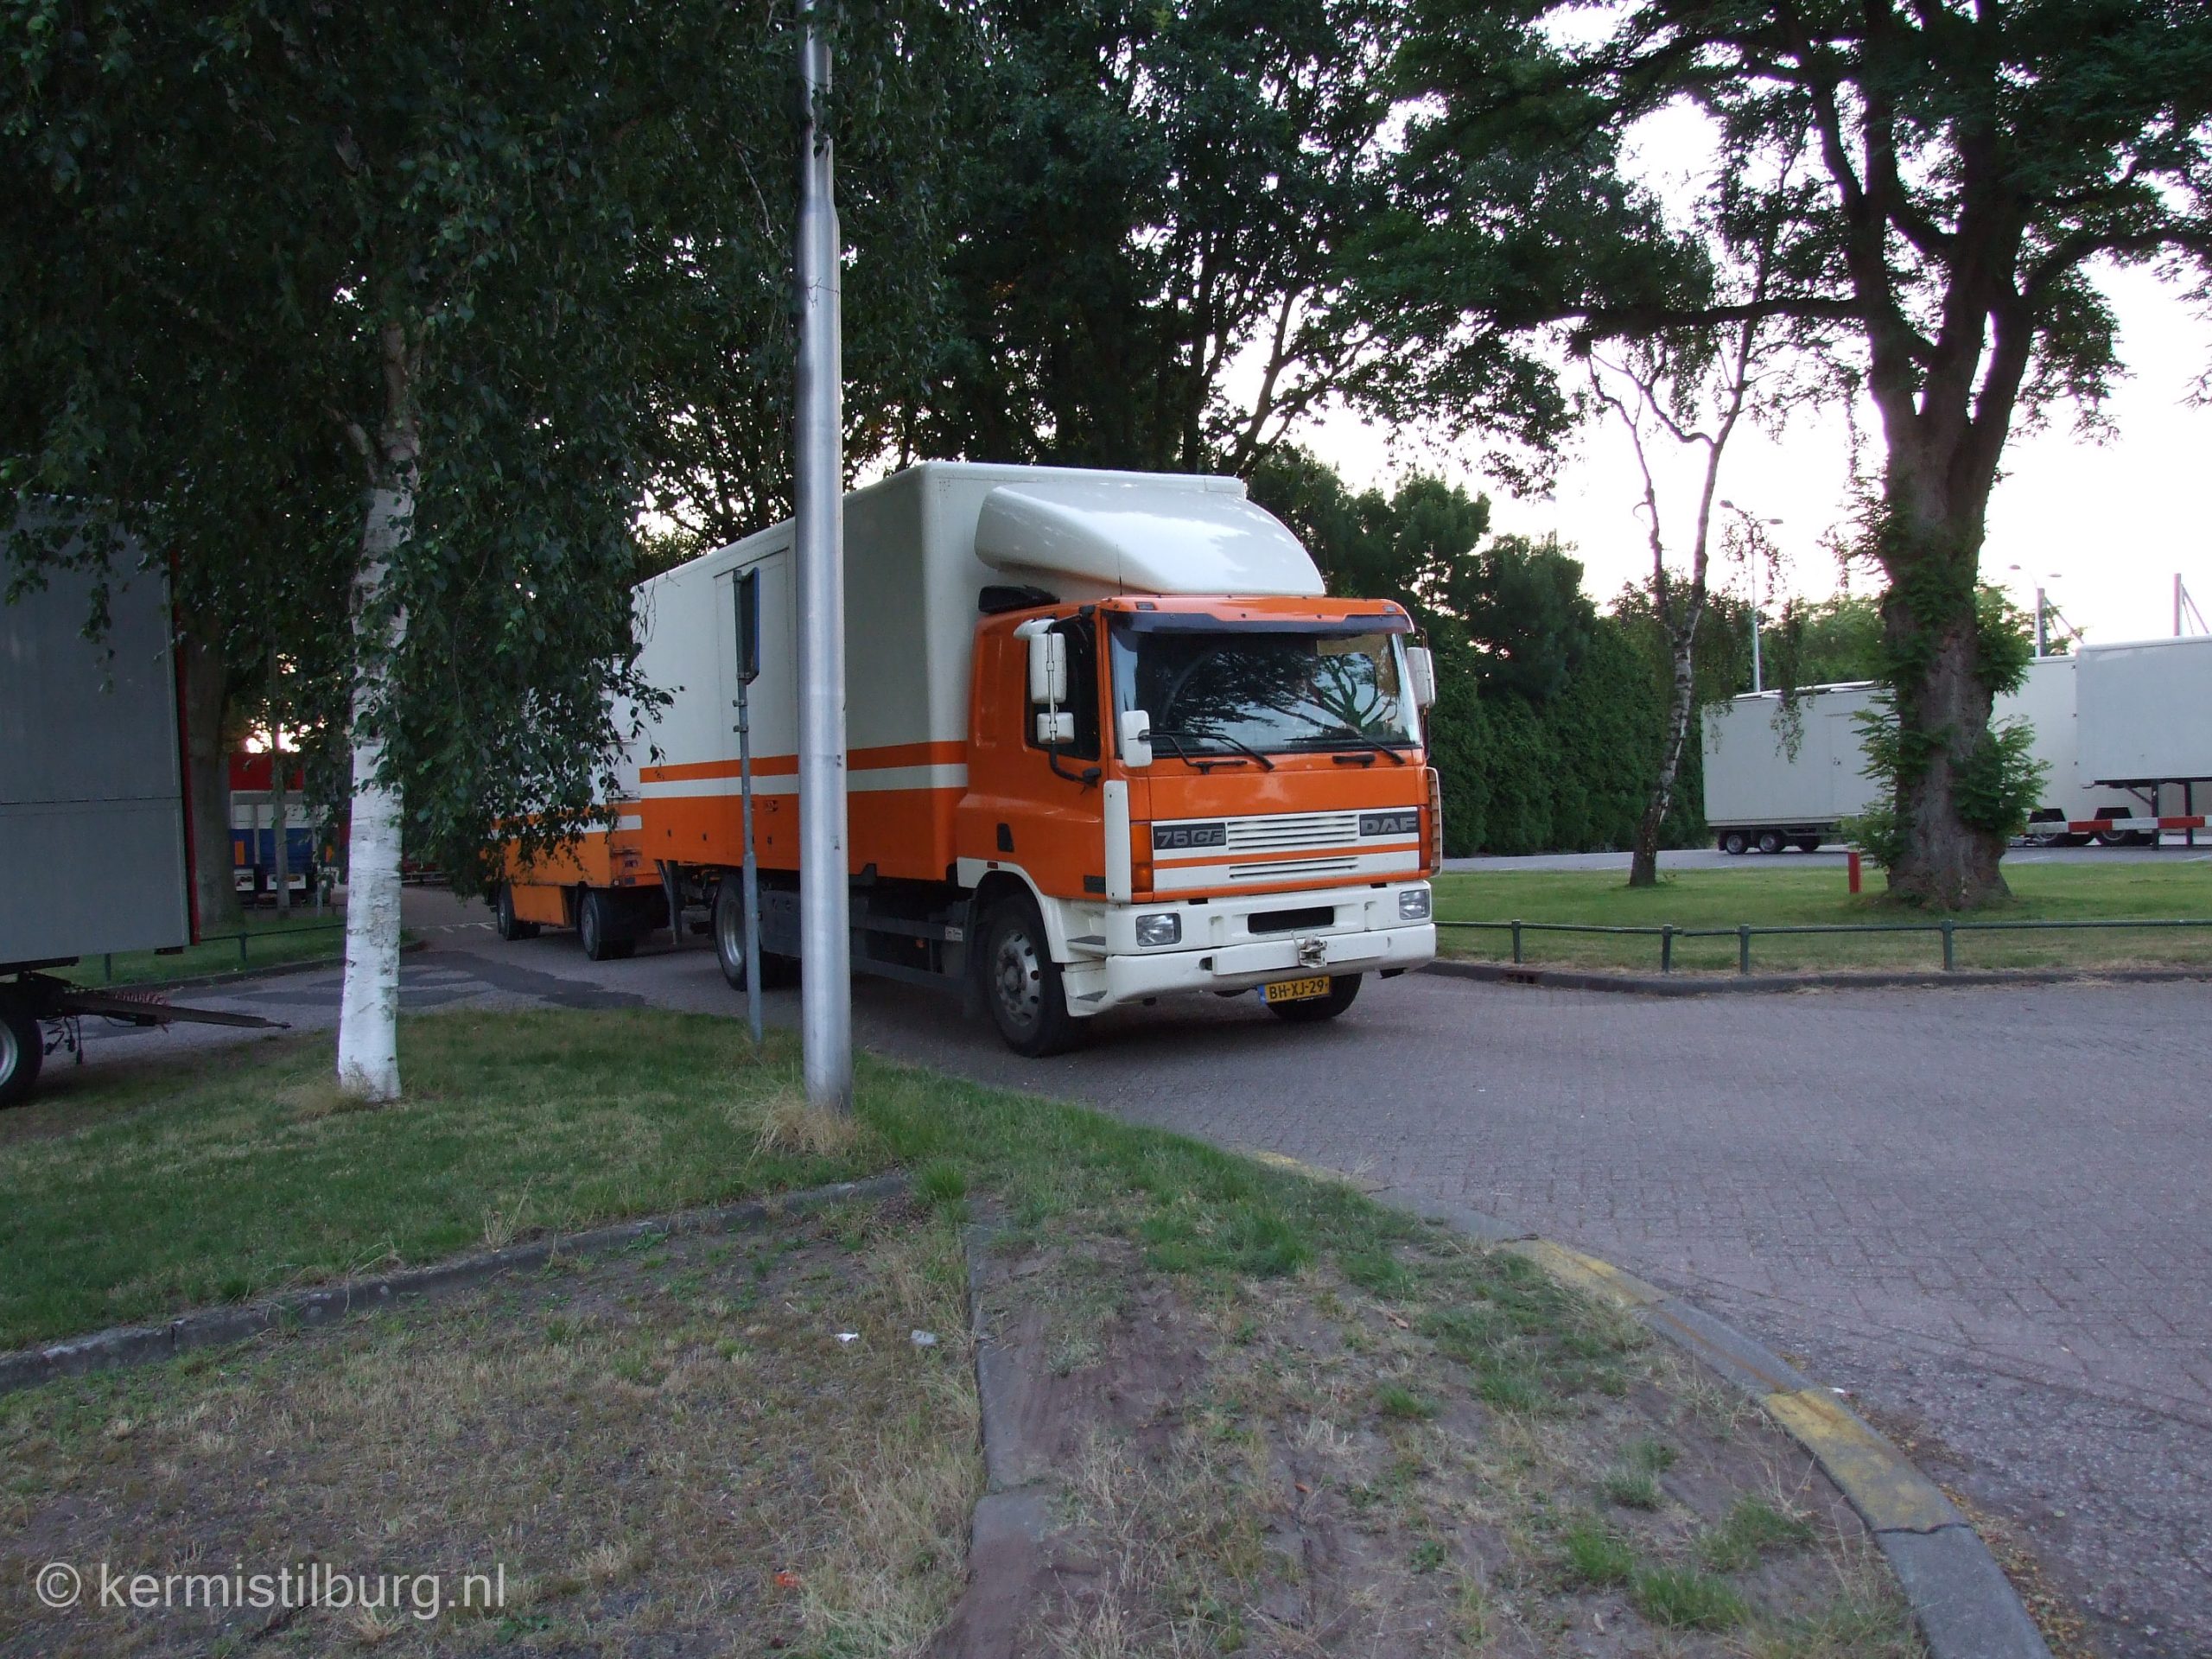 2013, Kermis, Tilburg, Tilburgse kermis, transport